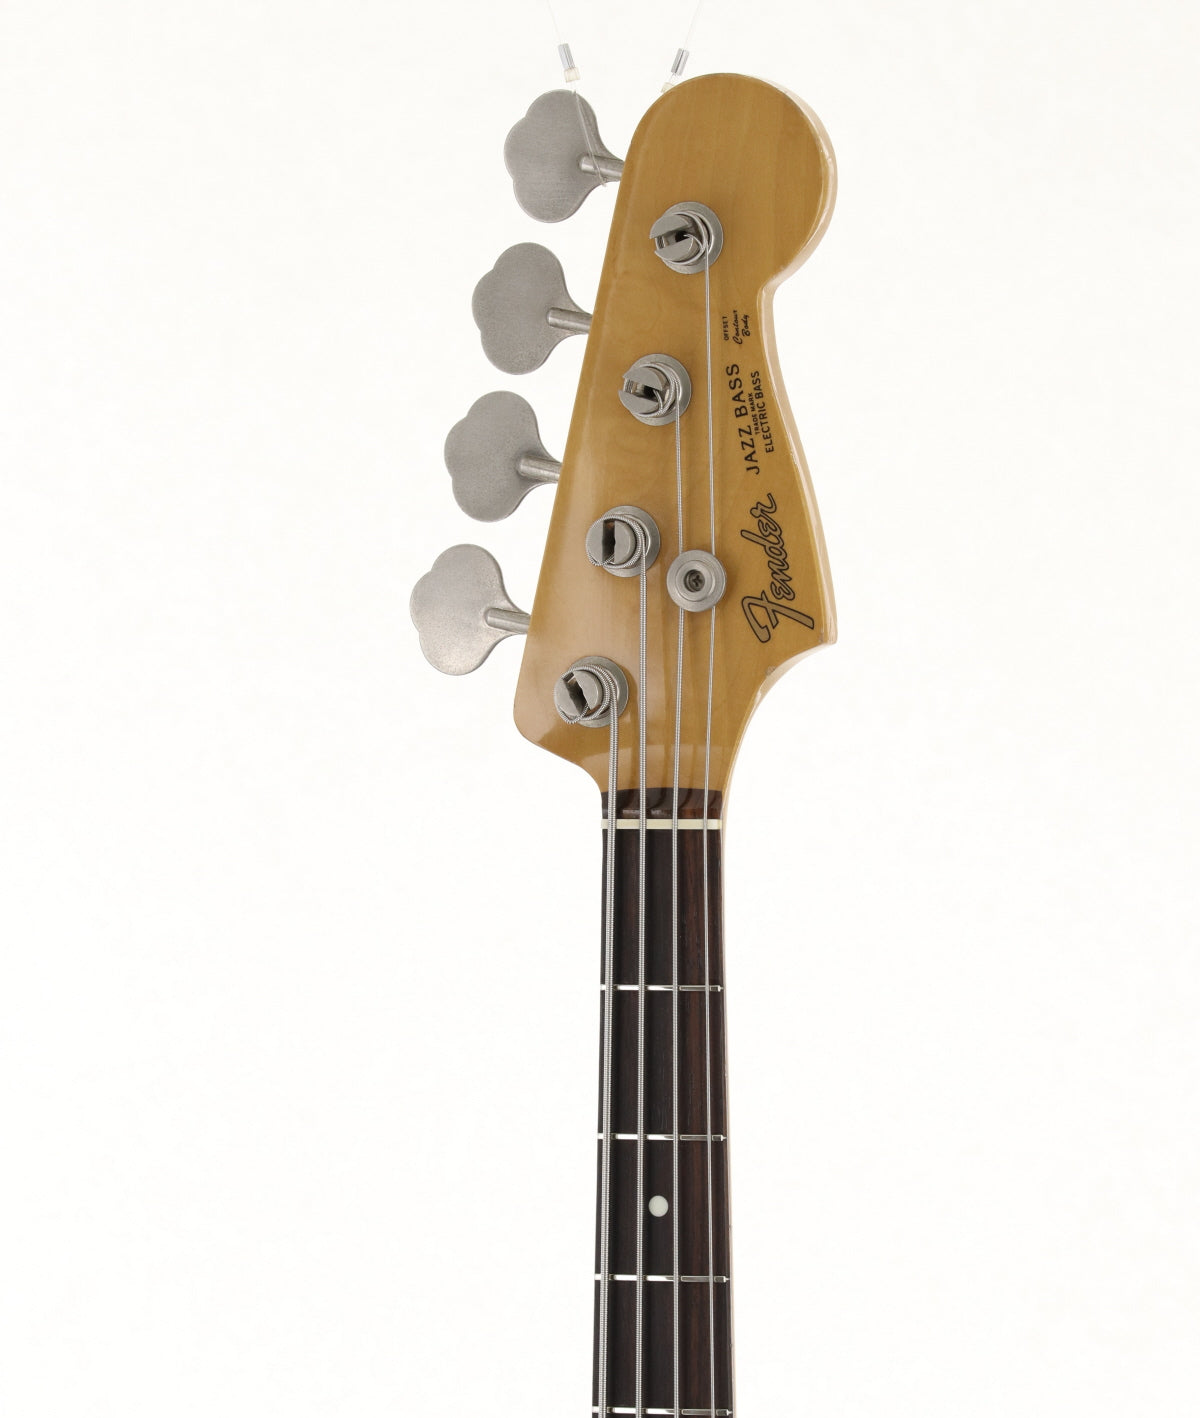 [SN I035289] USED Fender Japan / JB62-60 [03]